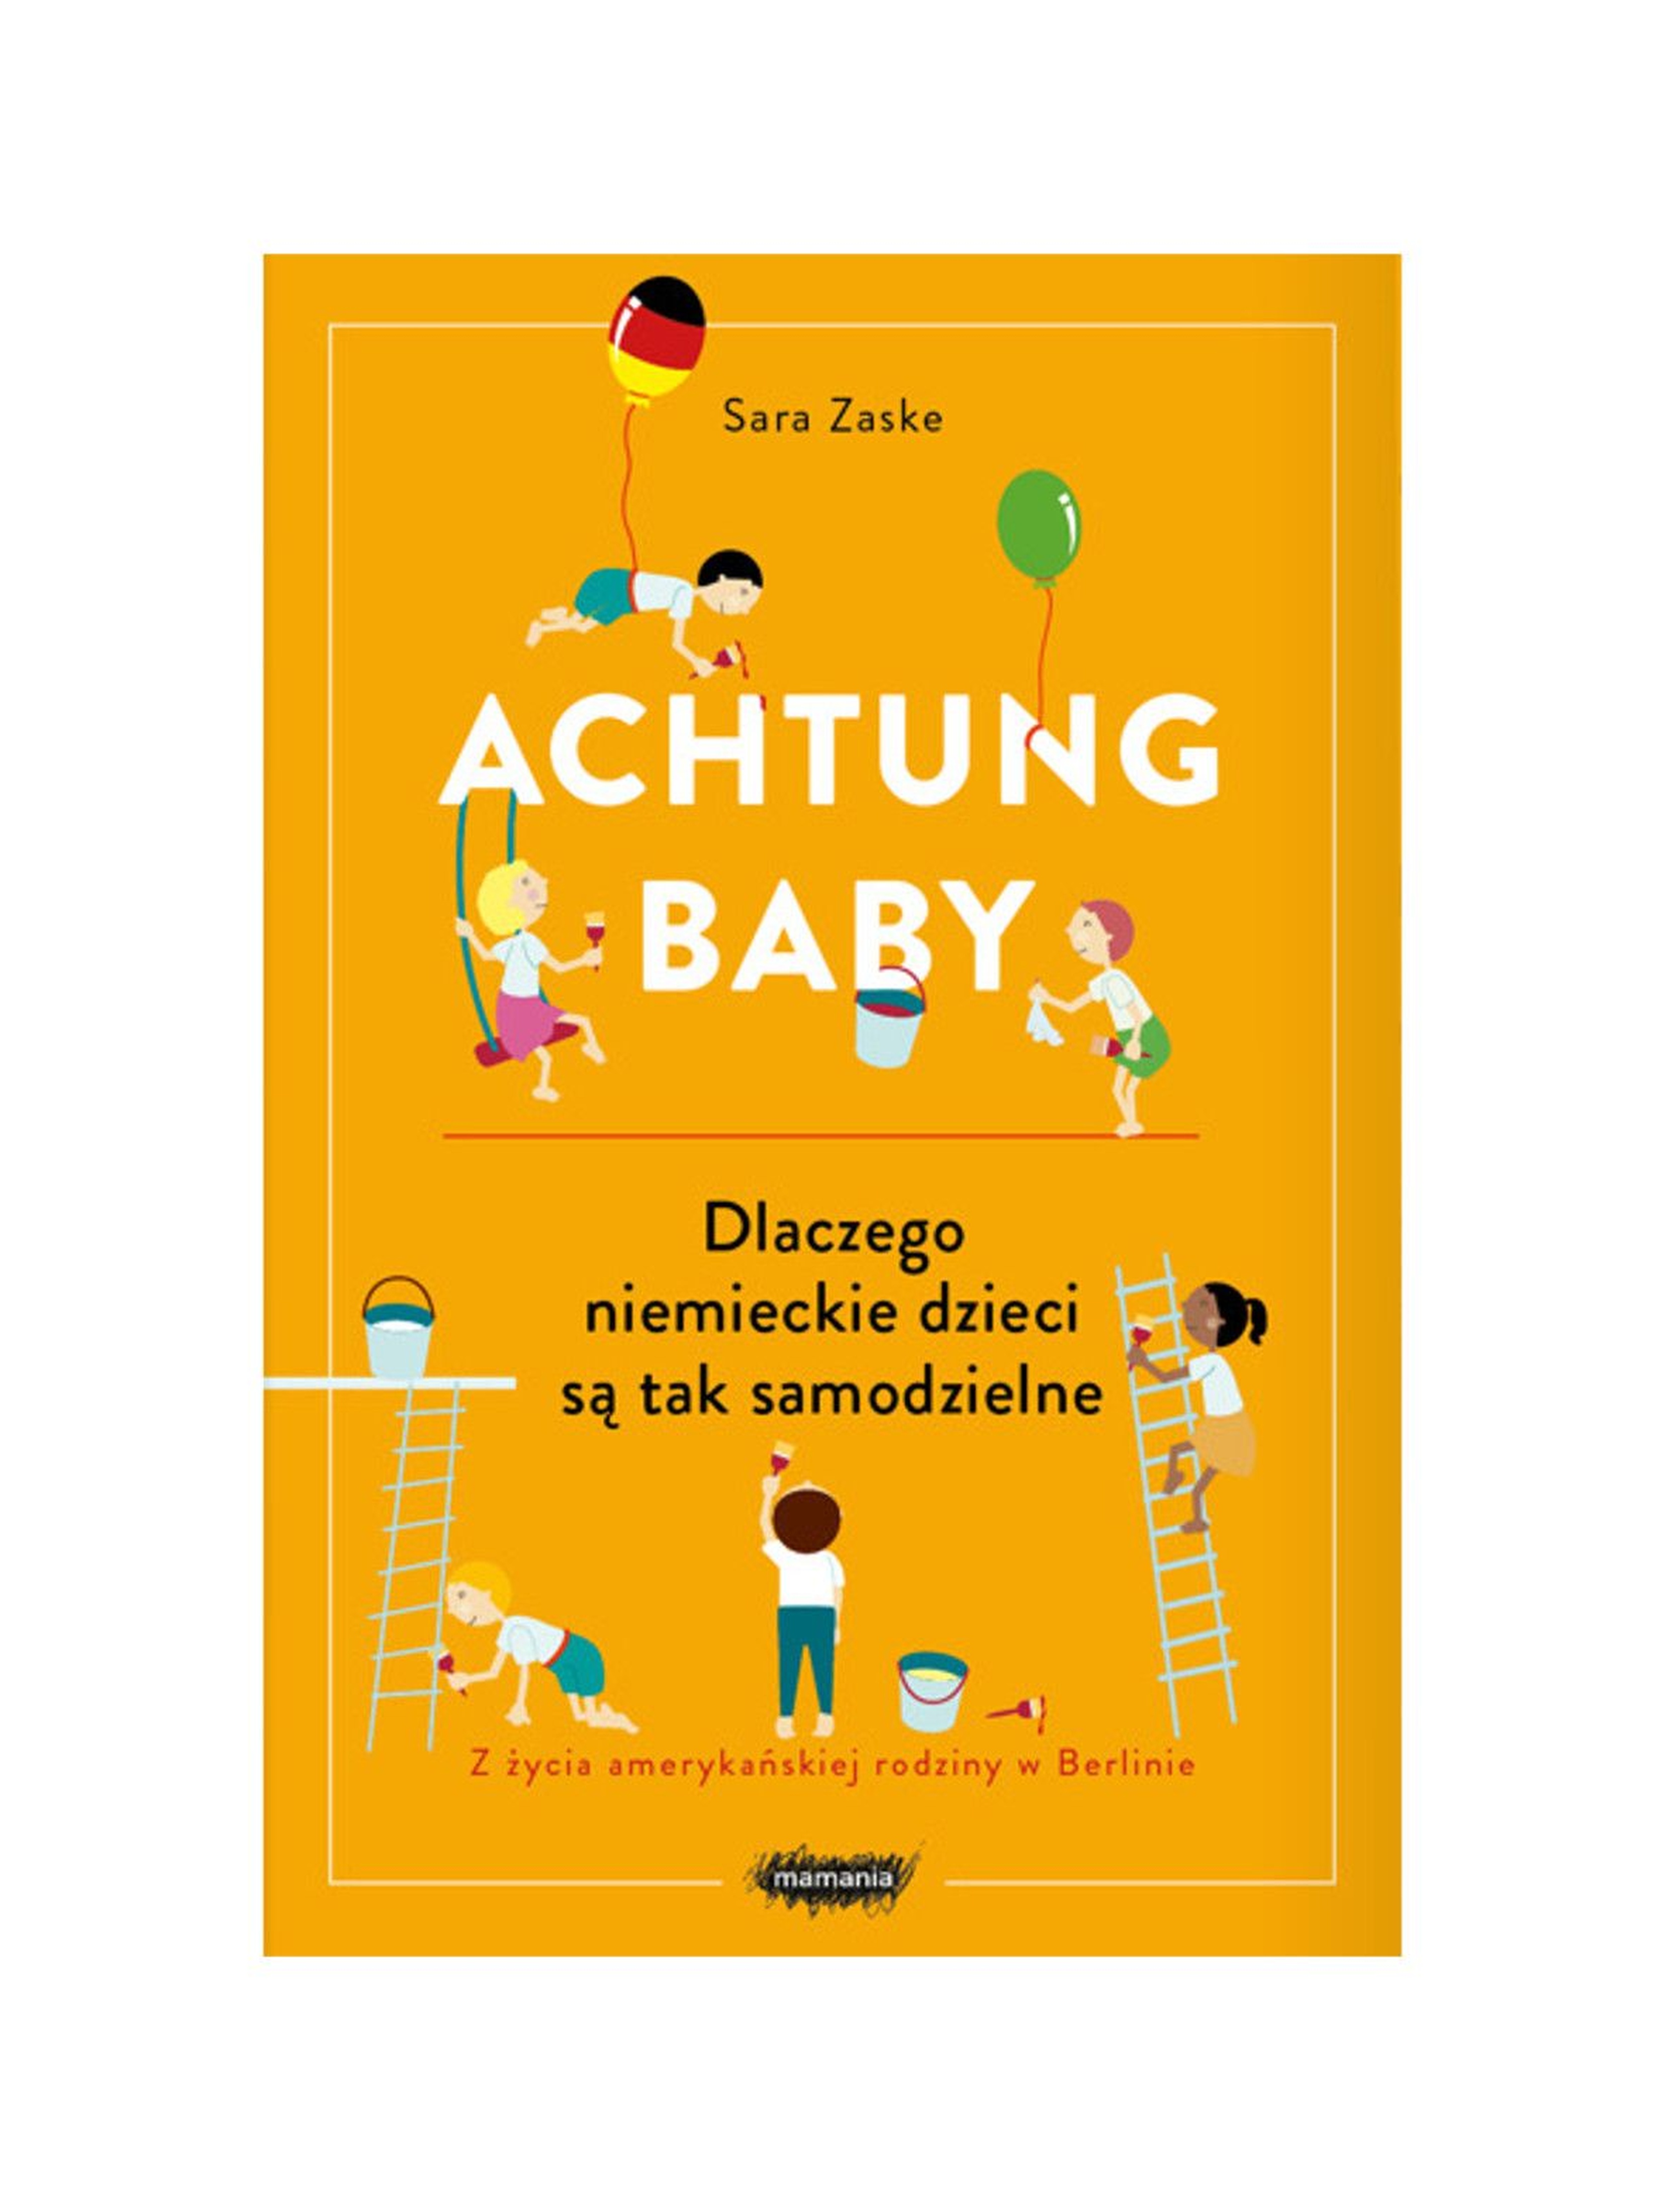 "Achtung baby. Dlaczego niemieckie dzieci są tak samodzielne"- S.Zaske